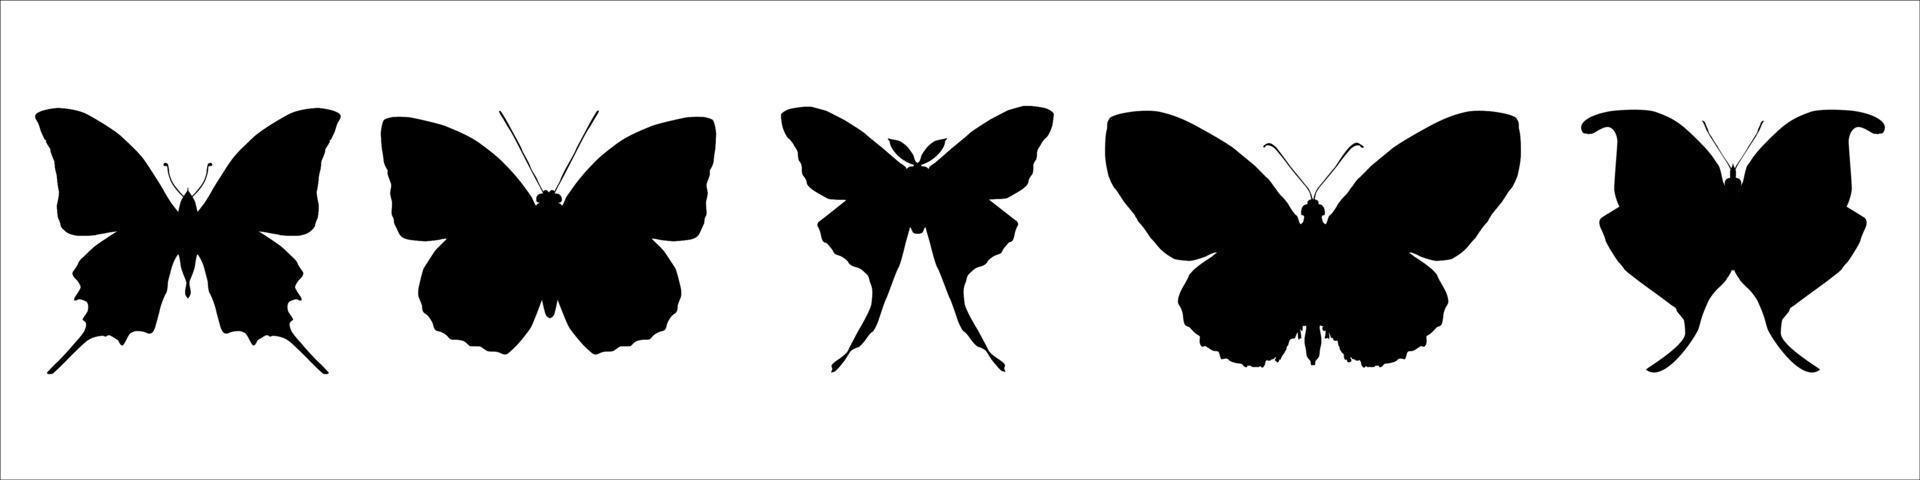 icone vettoriali farfalla nera